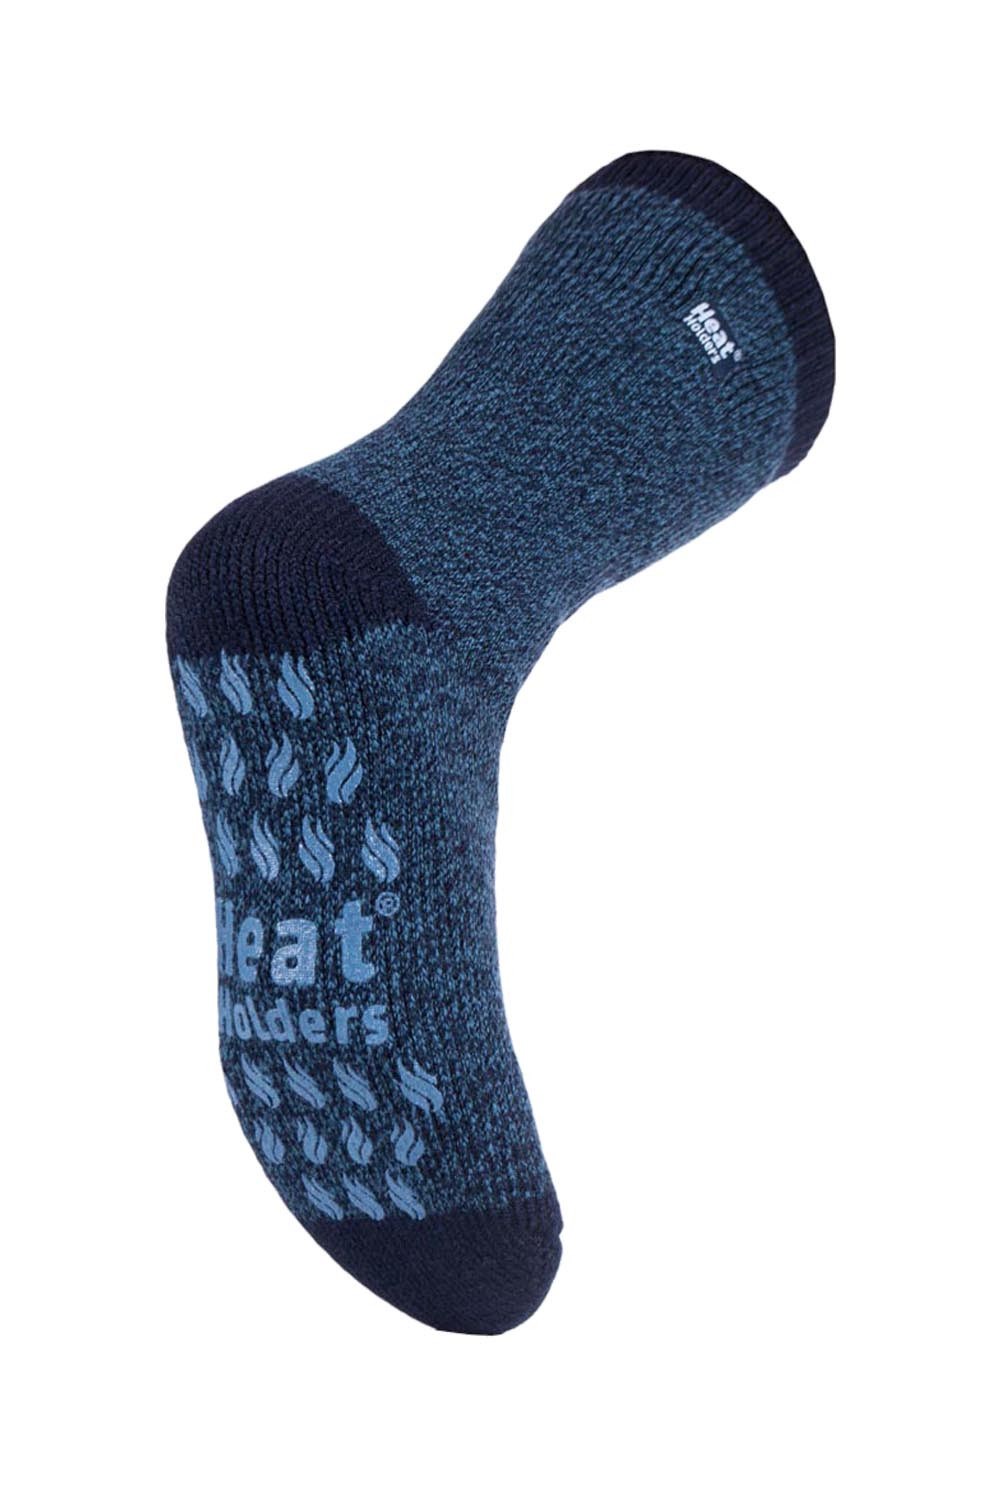 Mens Patterned Thermal Slipper Socks -